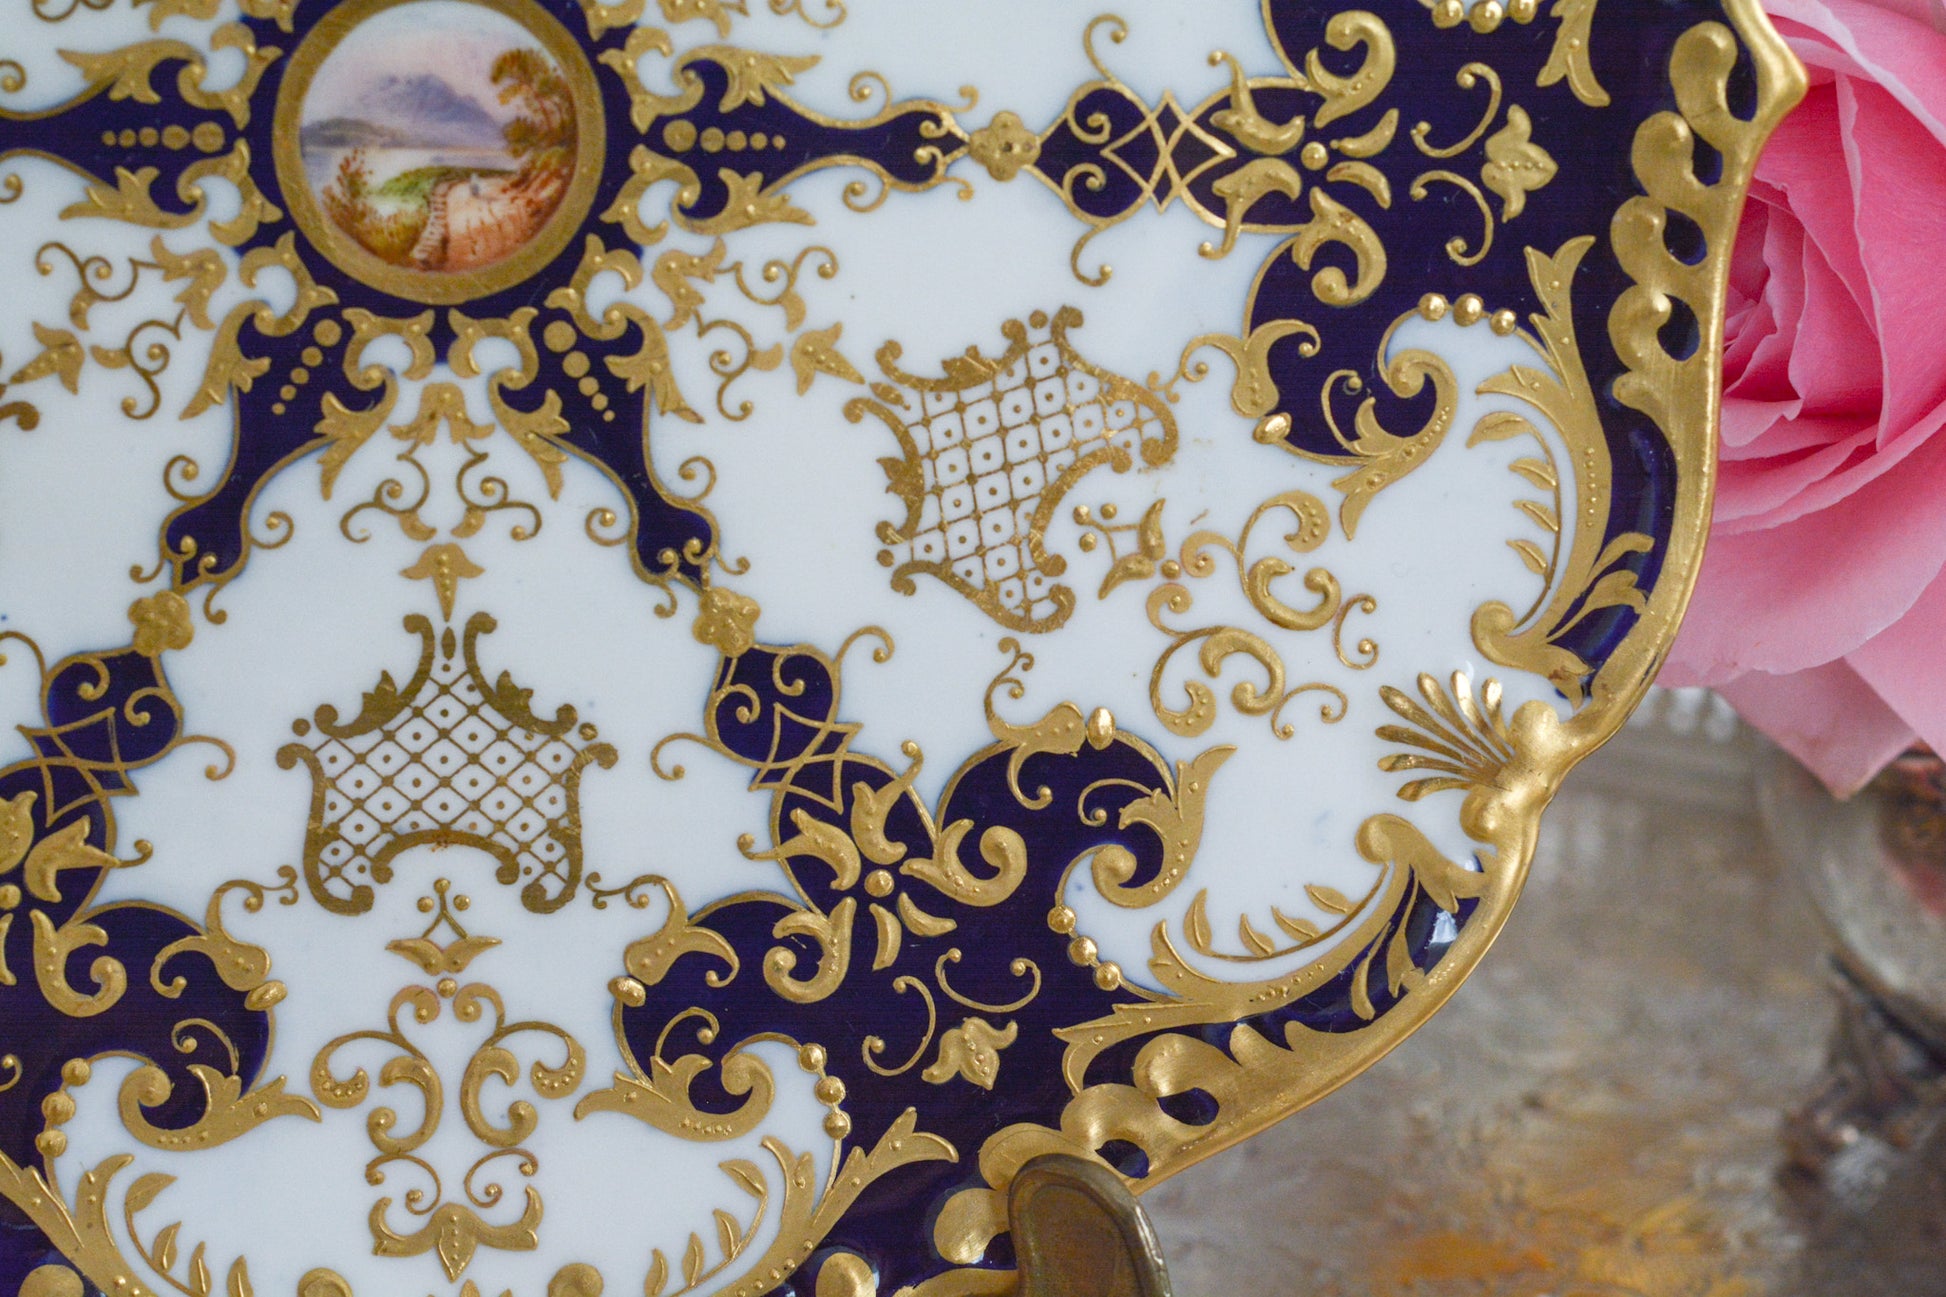 コールポートの大変美しいキャビネットプレート。豪華で繊細な模様に、中央には小さな風景画が描かれています。アンティークだからこその気品のあるデザイン。コールポートの逸品です。キャビネットプレートとして素晴らしい絵画の代わりにお部屋に飾っても素敵です。ぜひ宝物として受け継いでいただきたいです。 Rose Antiquesはコールポートをはじめ、英国アンティーク磁器、英国ヴィンテージ磁器、フィギュリン、アンティークシルバーをご紹介しています。 